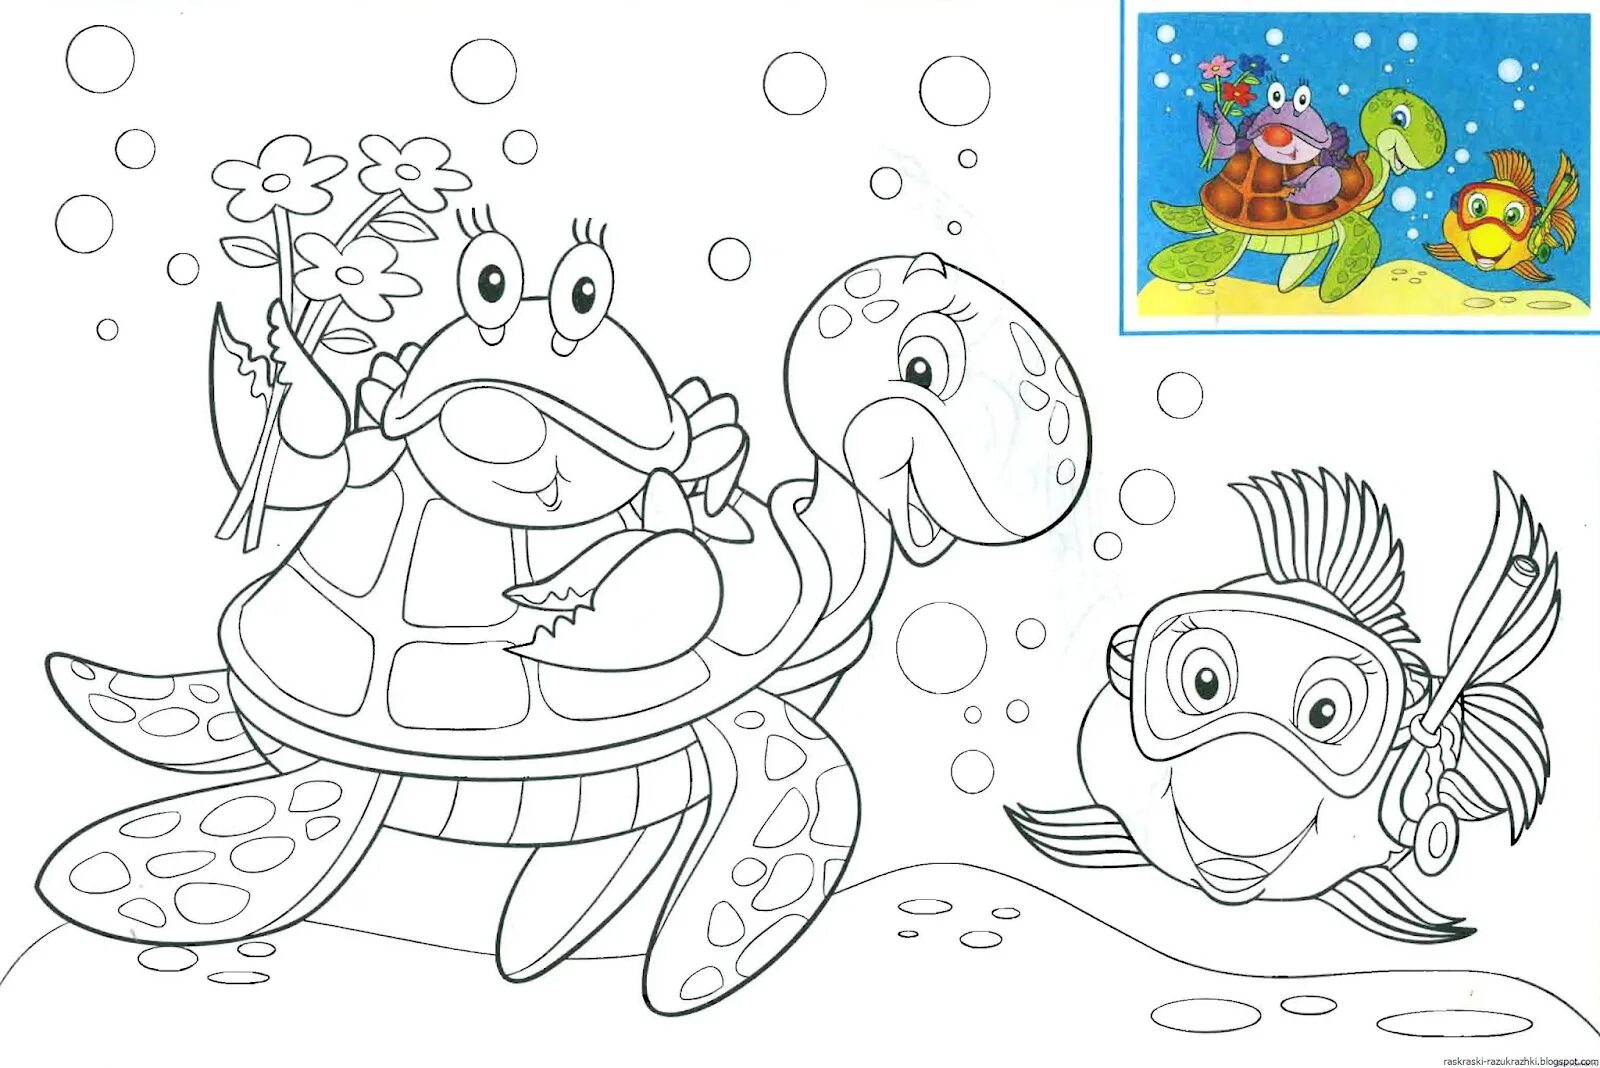 Underwater world for children 4 5 years old #3